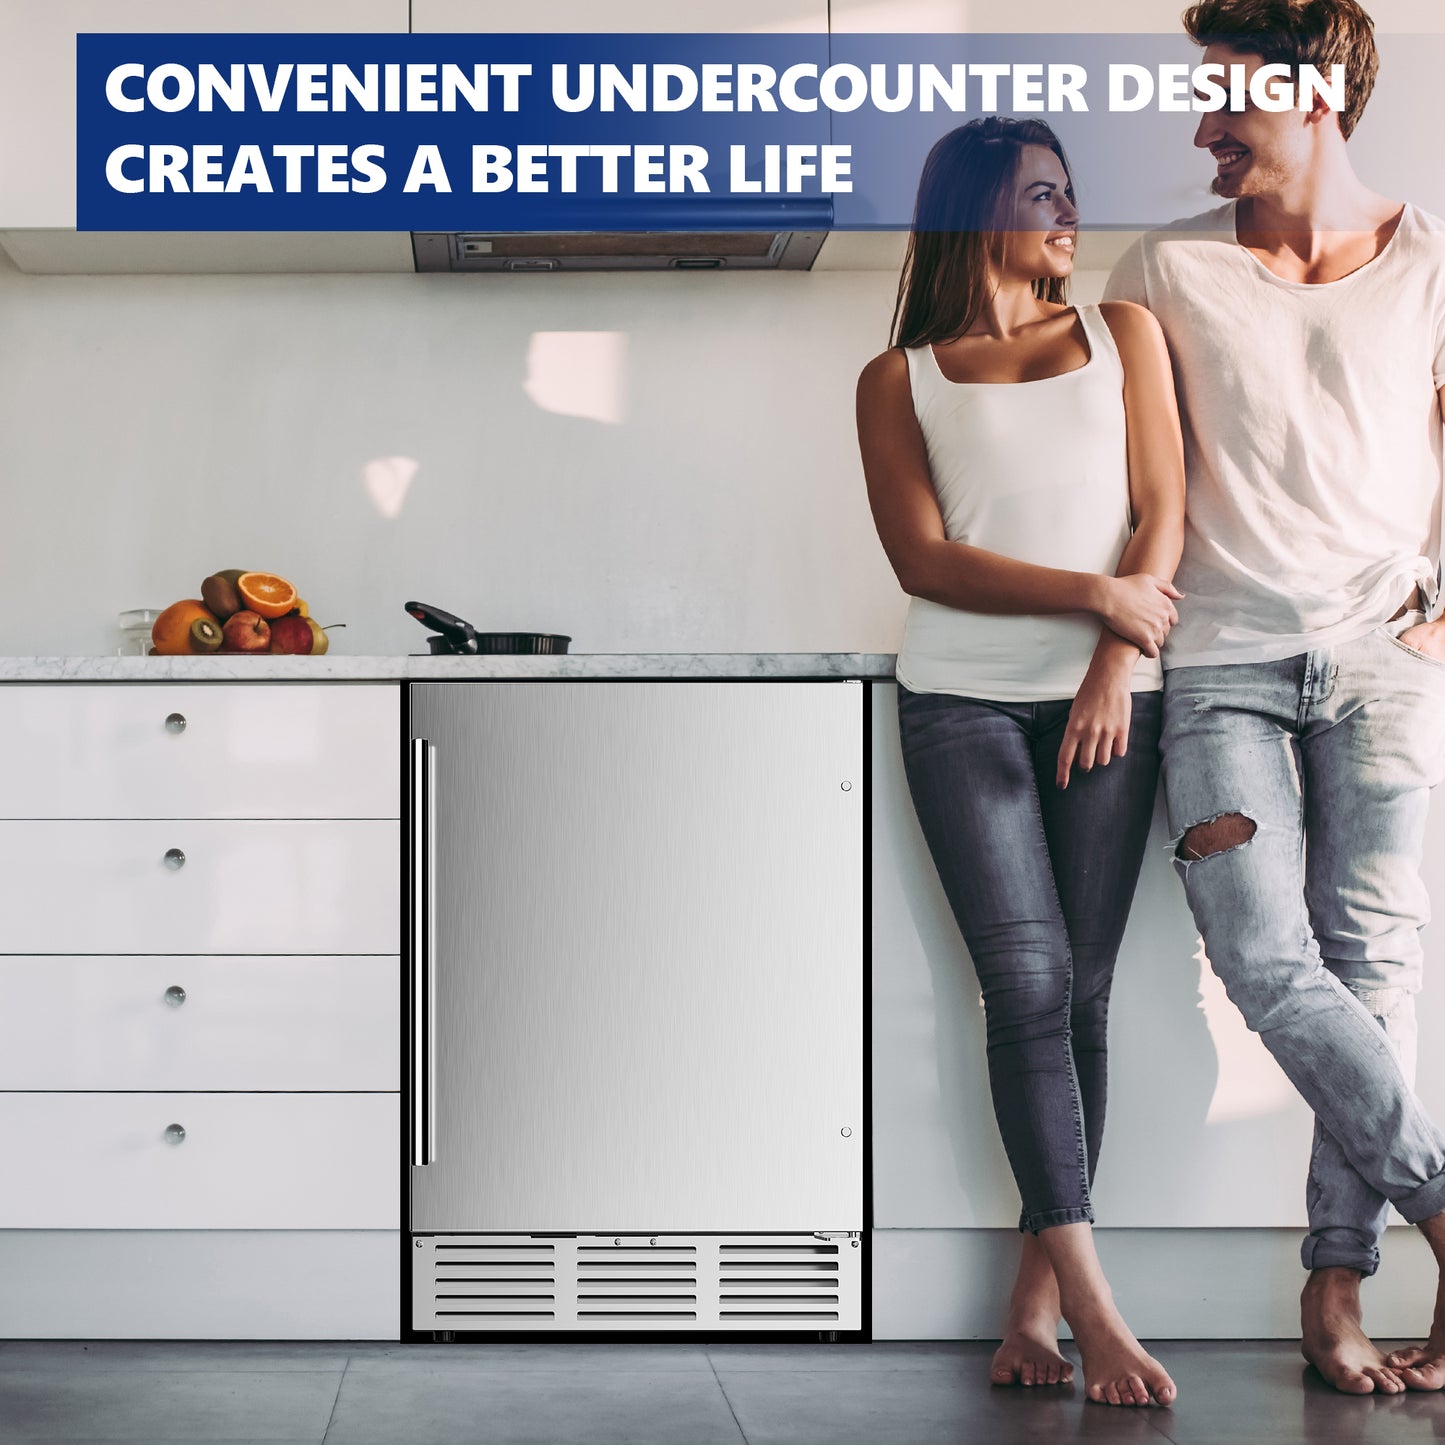 Simzlife 4.9 Cu.ft. Undercounter Freestanding Stainless Steel Door Beverage Refrigerator, 23.4 in W, 34.25 in H